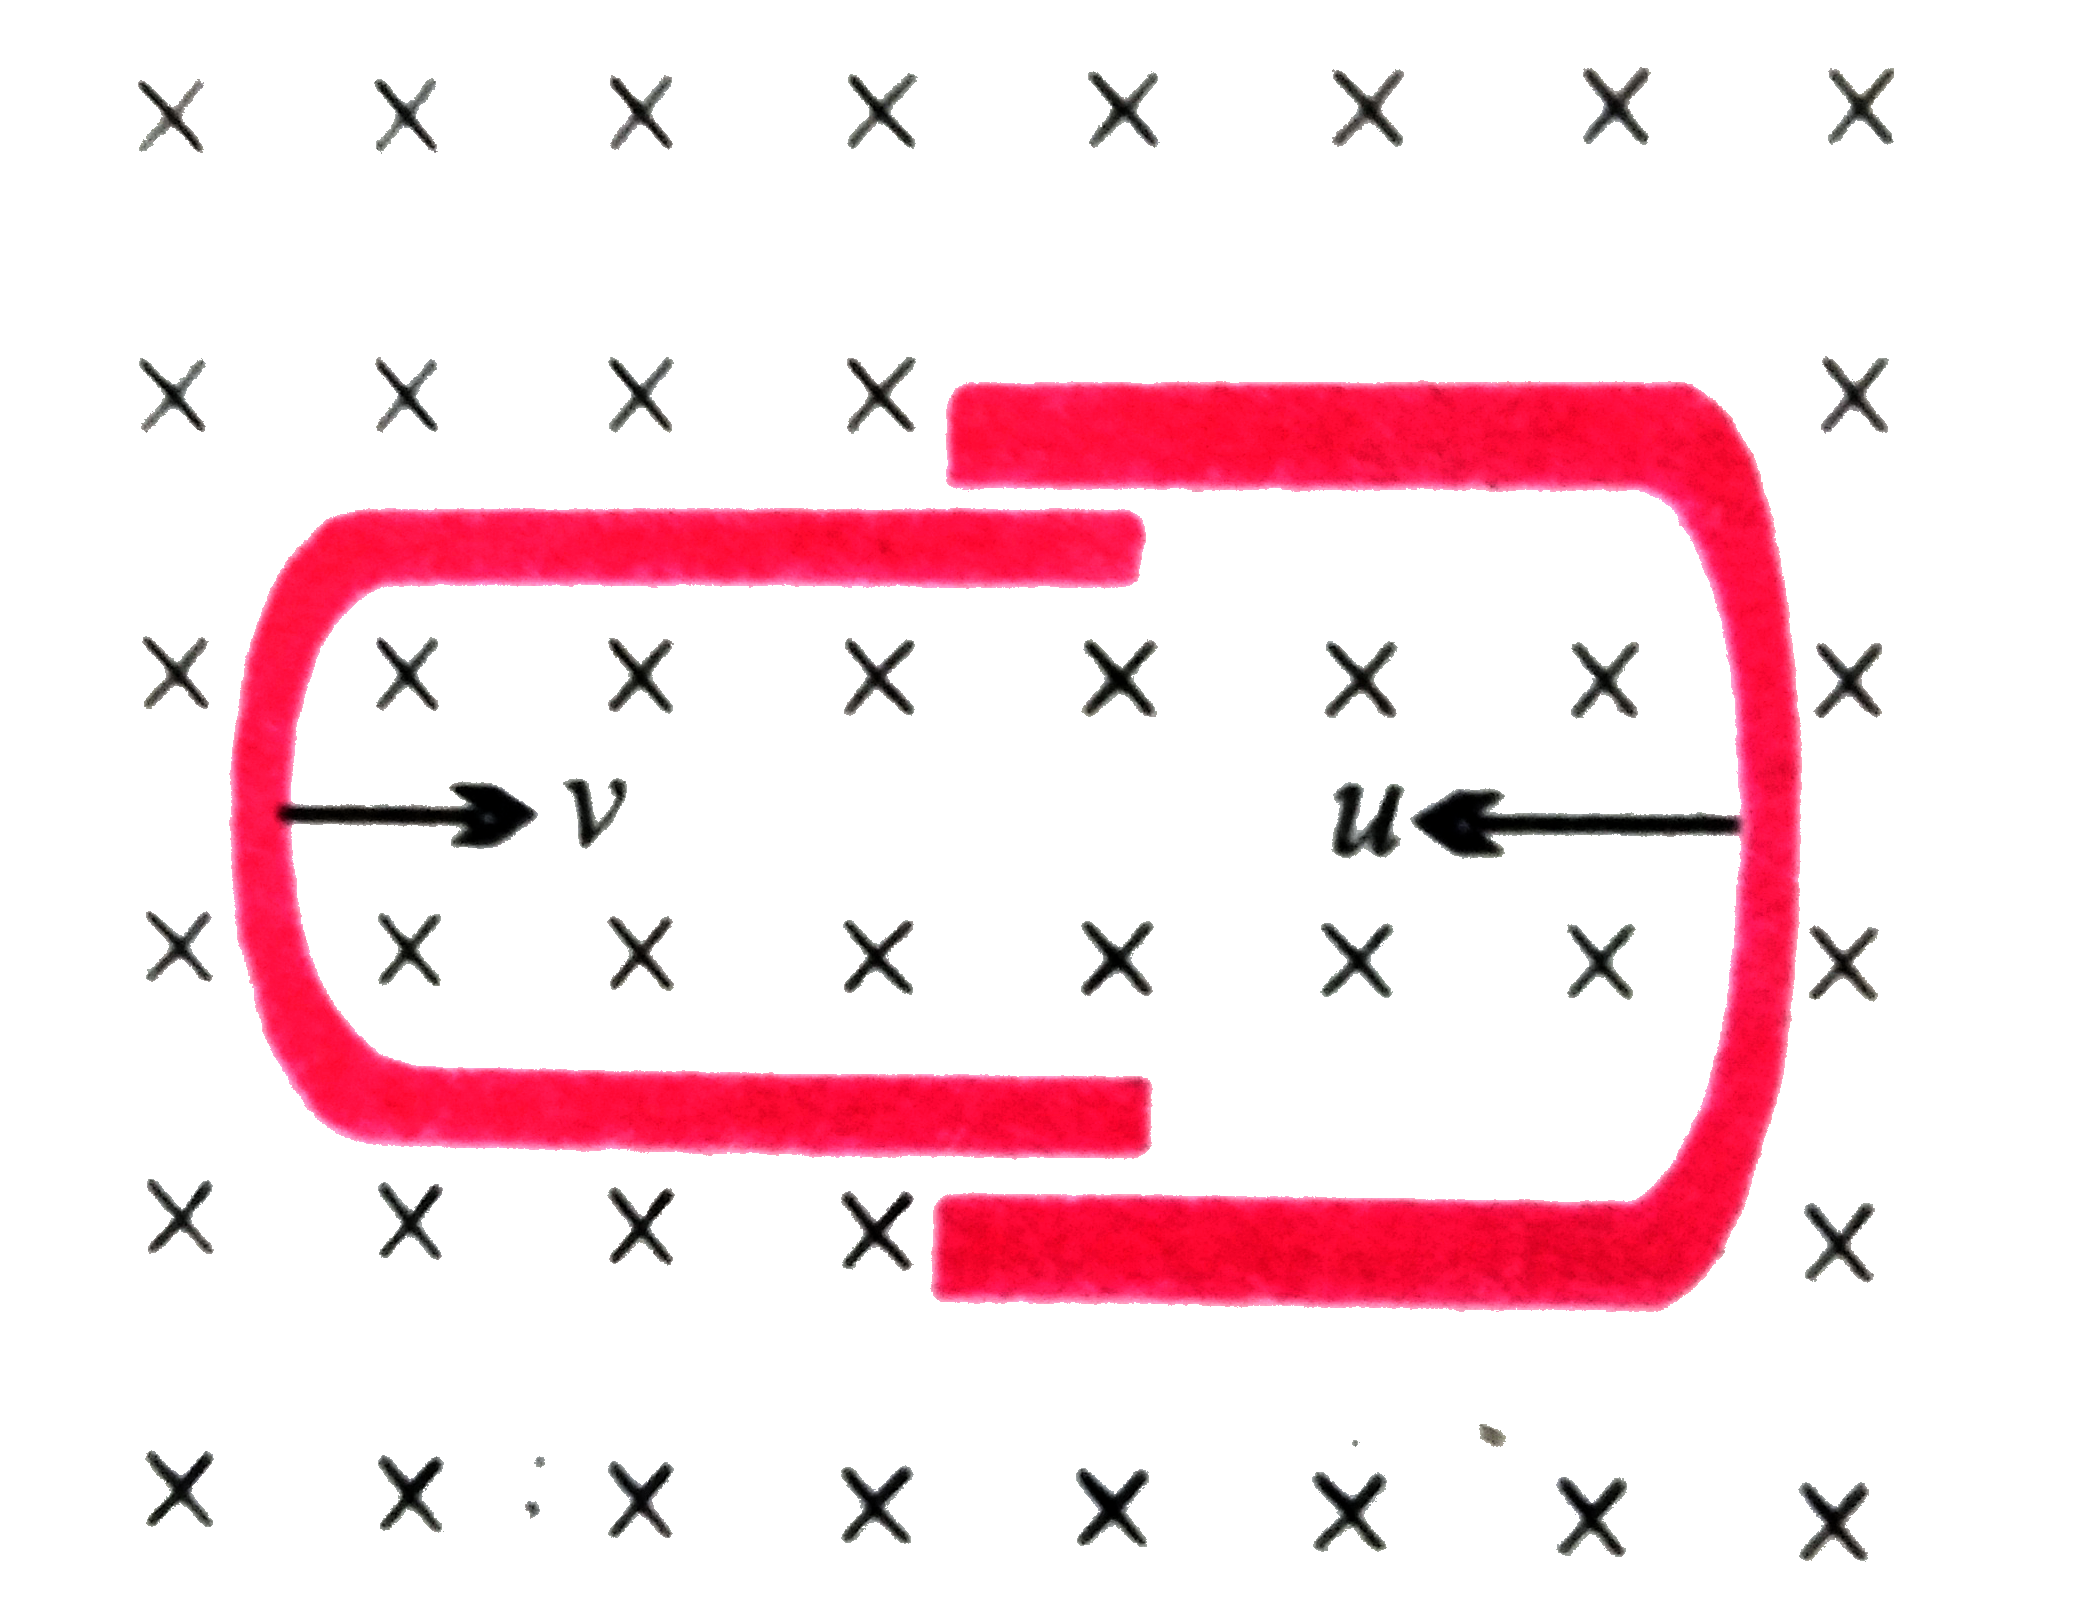 एक चालक U  नली दूसरी   U नली के अंदर इस प्रकार सरकती है की उनके बीच विद्युत संपर्क बना रहे। चुम्बकीय क्षेत्र  B कागज  के तल के लम्बवत अंदर की ओर है । यदि दोनों नलियाँ एक - दूसरे की ओर नियत  चाल v  से सरकती  हो तो B,l ओर v के पदों में प्रेरित वि. वा. बल होगा ( जहाँ l प्रत्येक नली की चौड़ाई है )-